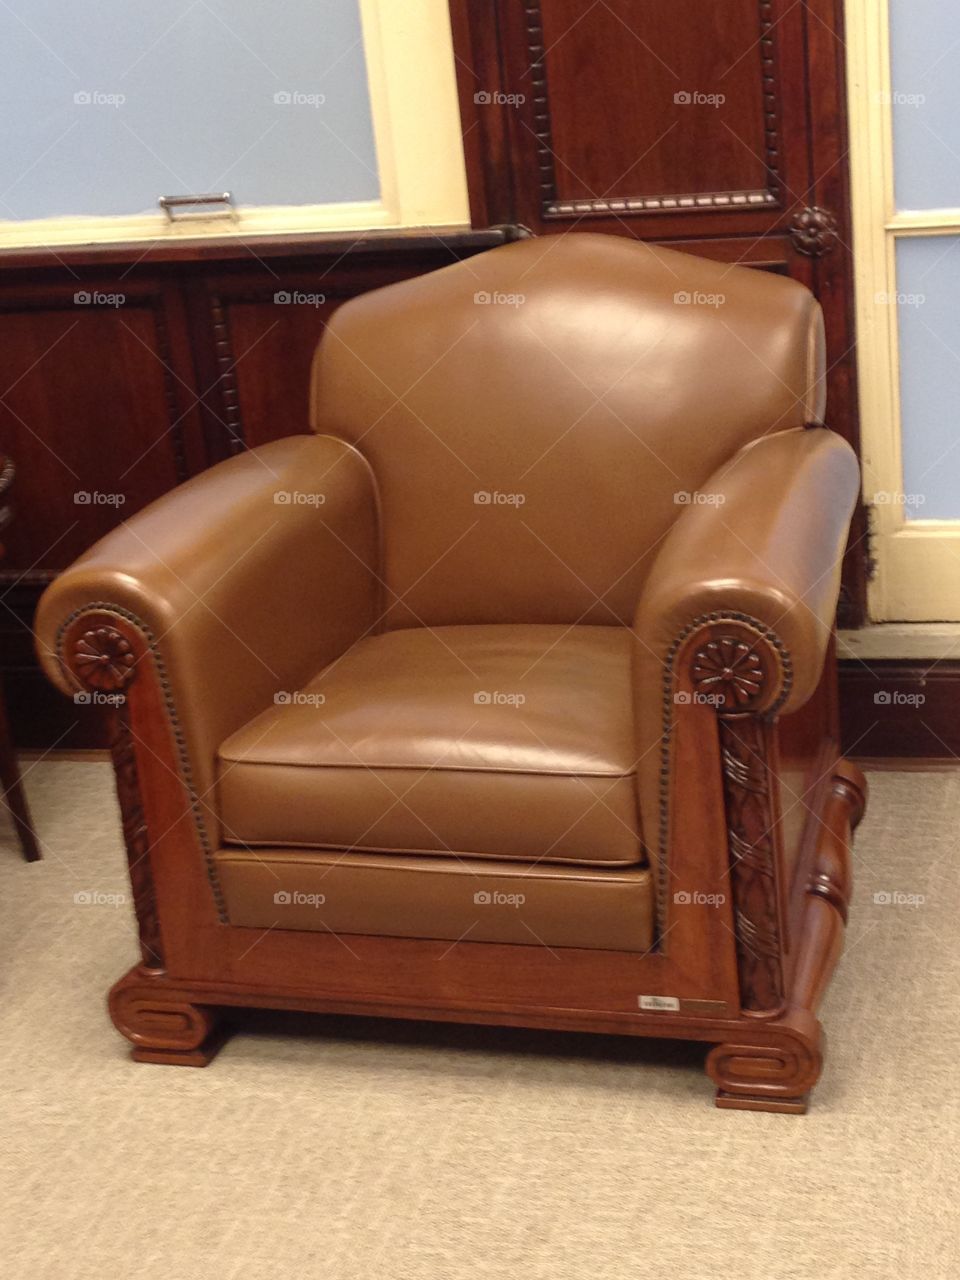 The President's armchair